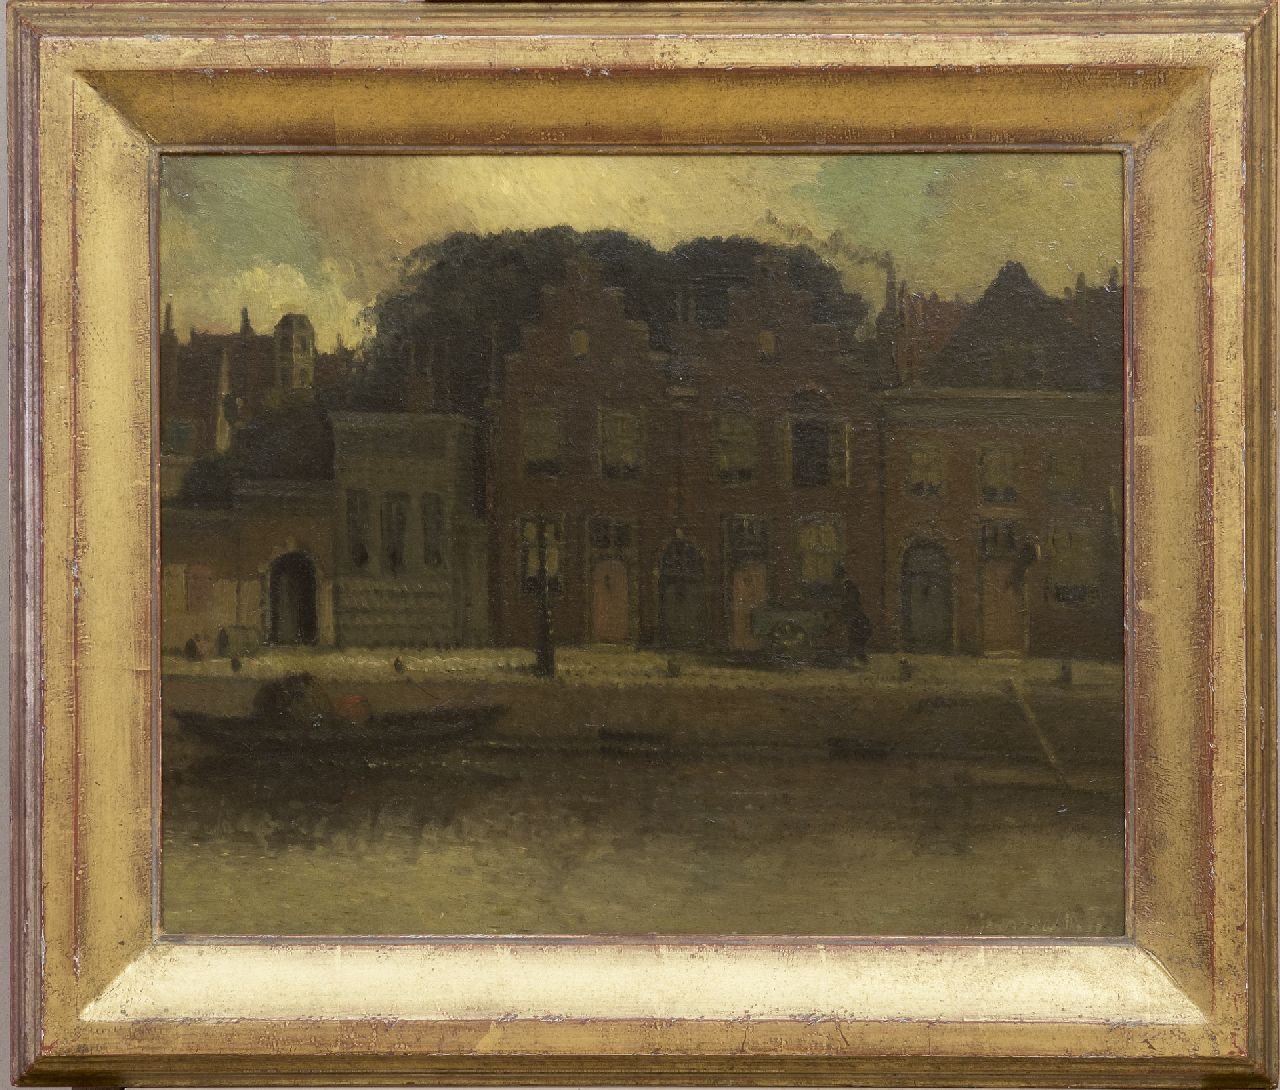 Daalhoff H.A. van | Hermanus Antonius 'Henri' van Daalhoff | Schilderijen te koop aangeboden | Huizen langs de kade, olieverf op paneel 37,7 x 46,0 cm, gesigneerd rechtsonder